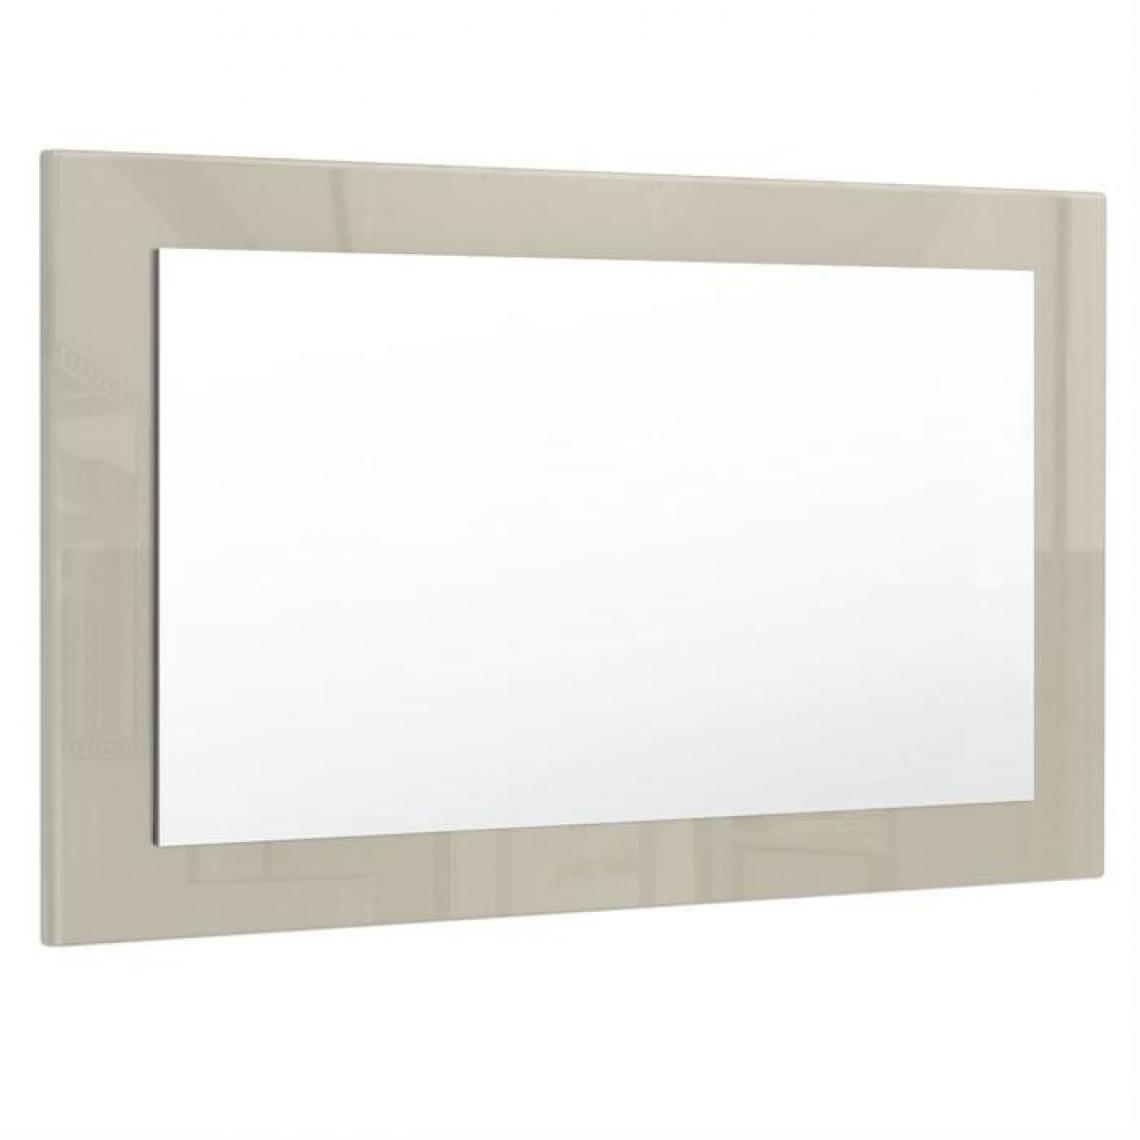 Mpc - Miroir gris sable brillant (HxLxP): 45 x 89 x 2 - Miroir de salle de bain